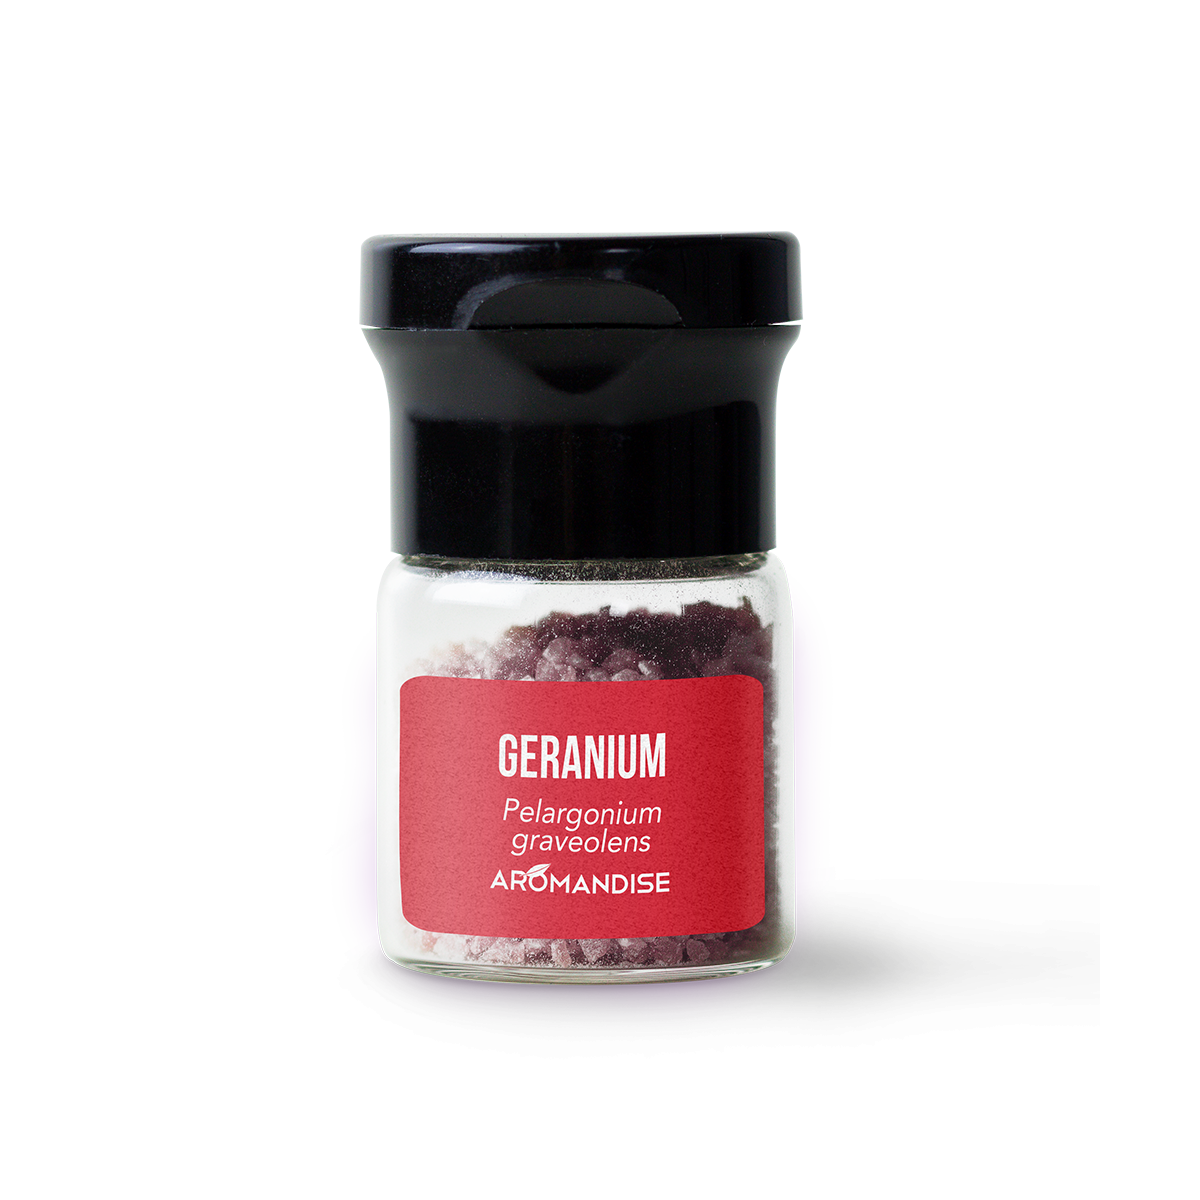 Géranium rosat Huile essentielle bio alimentaire pour la cuisine